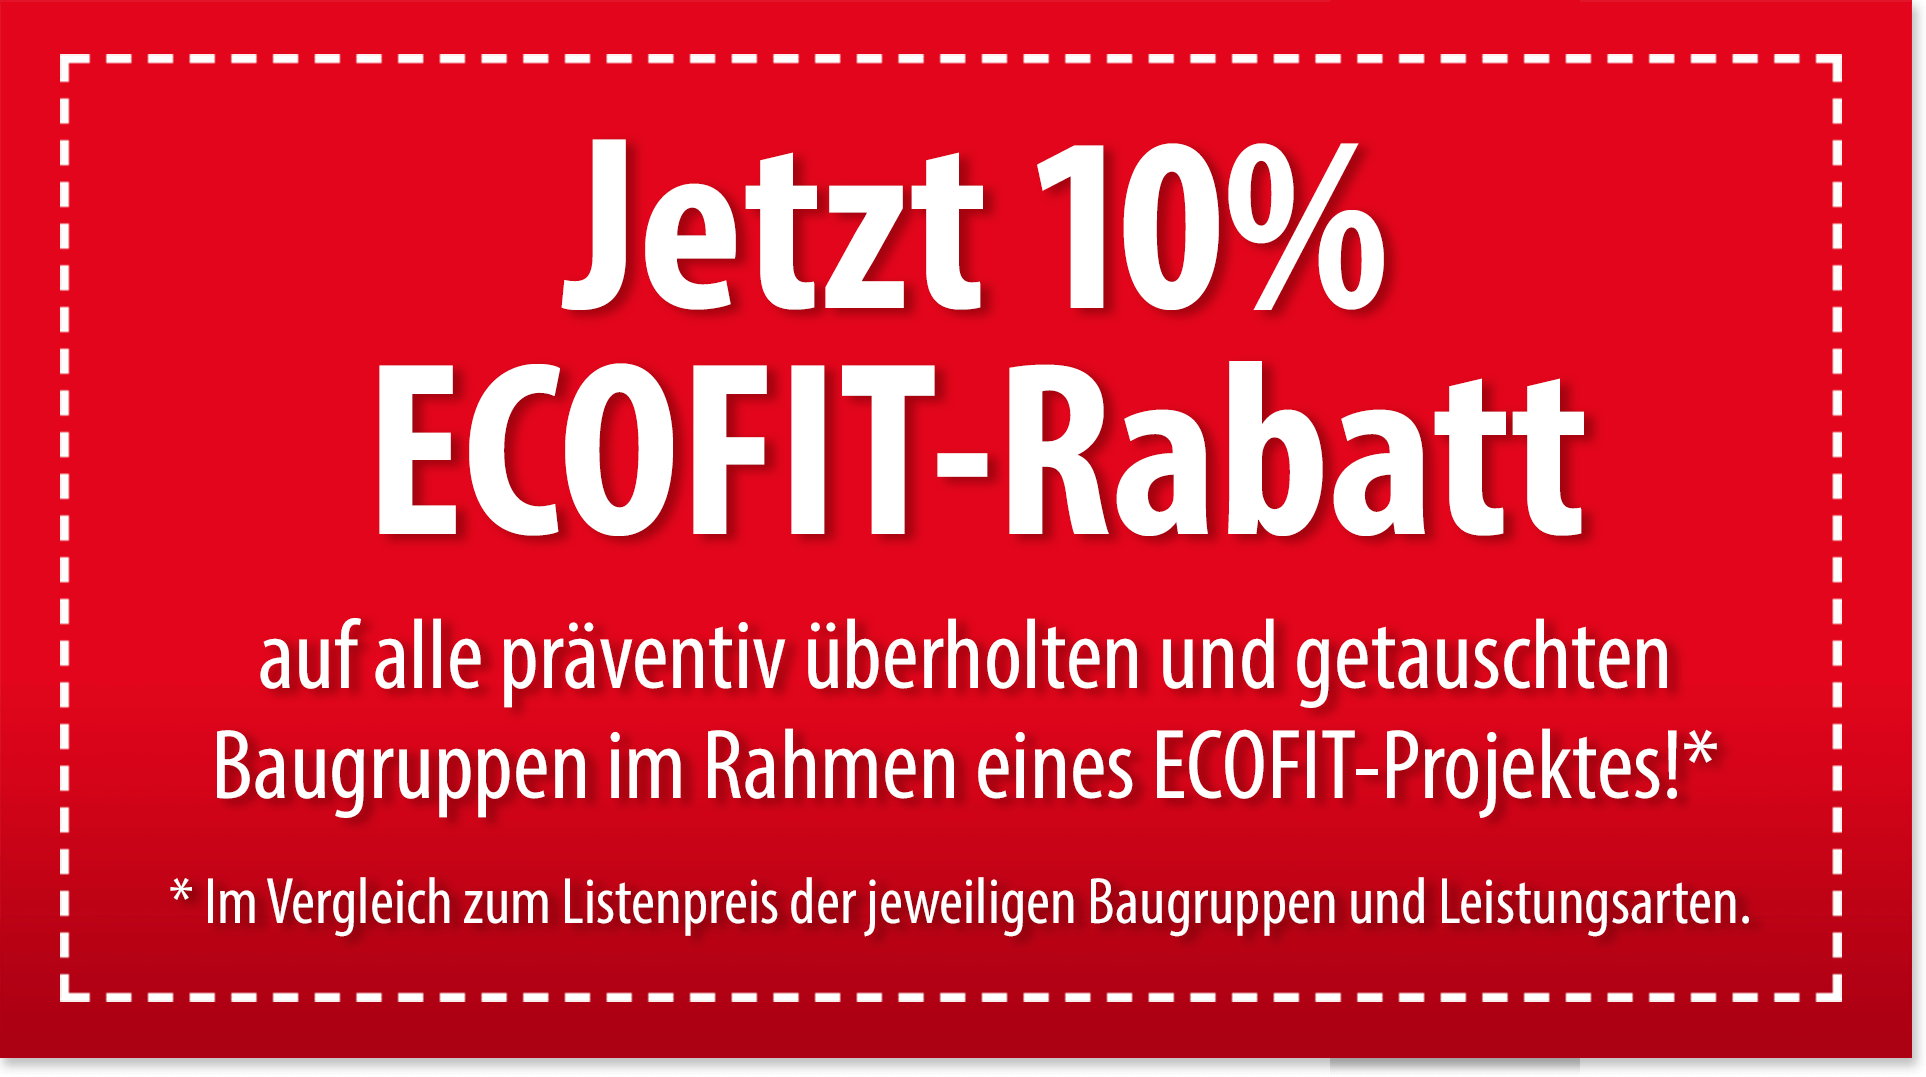 10% Ecofit-Rabatt